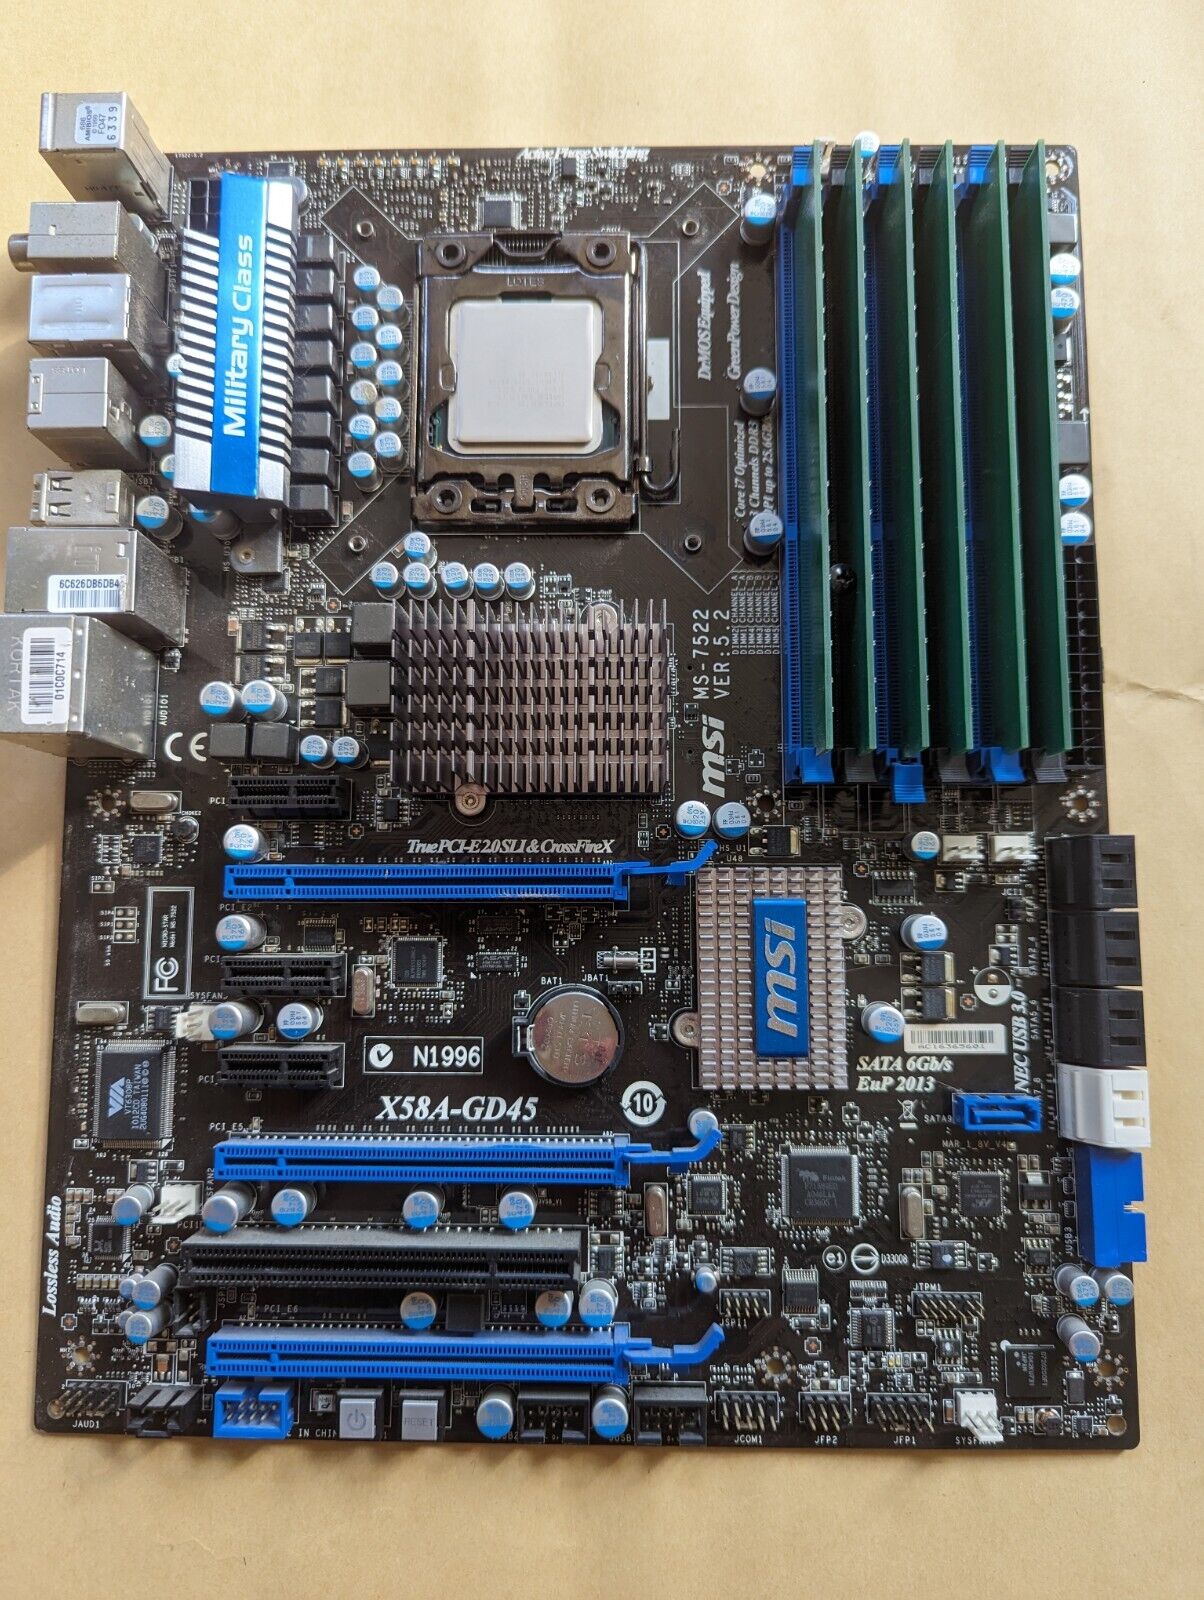 Motherboard/CPU/Ram Combo - MSI X58A-GD45, LGA1366 - Intel i7-960 - 12 GB Ram